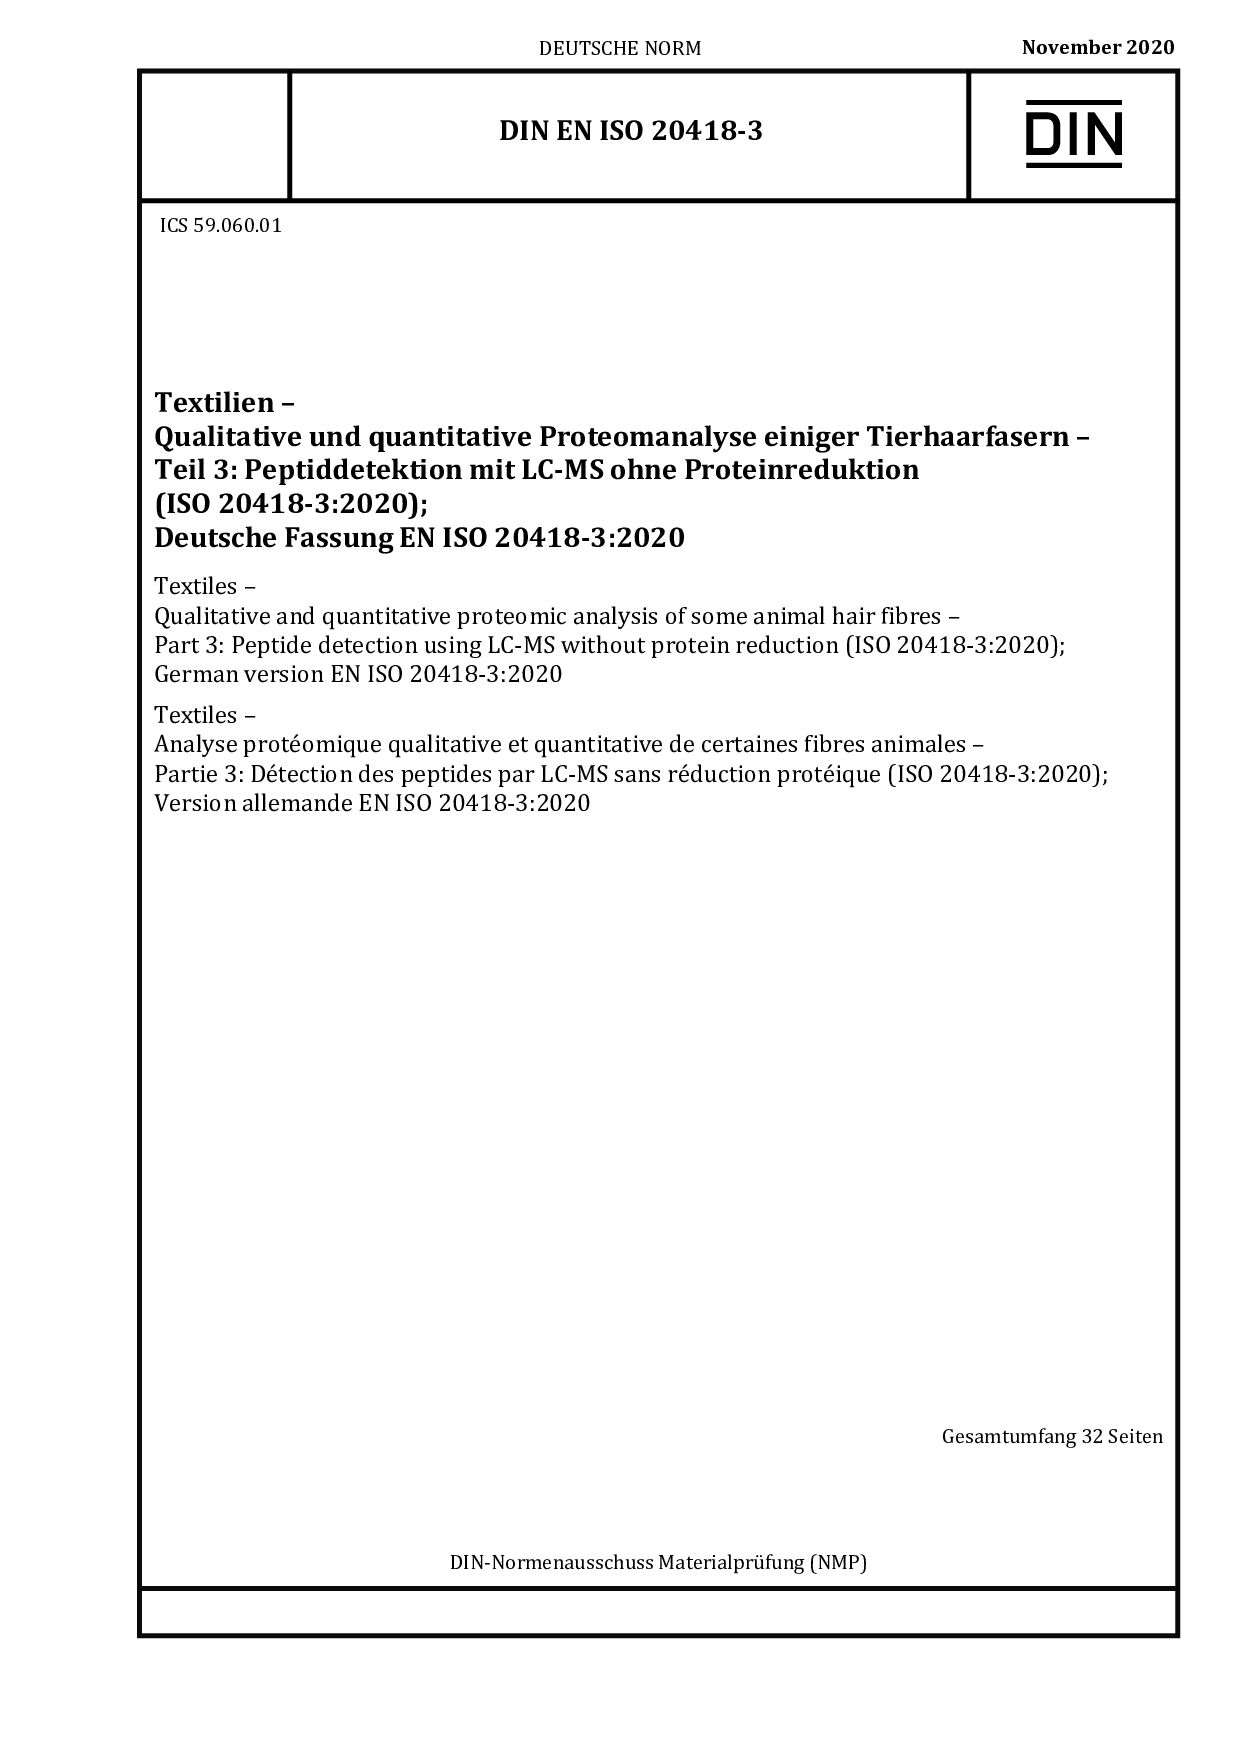 DIN EN ISO 20418-3:2020封面图